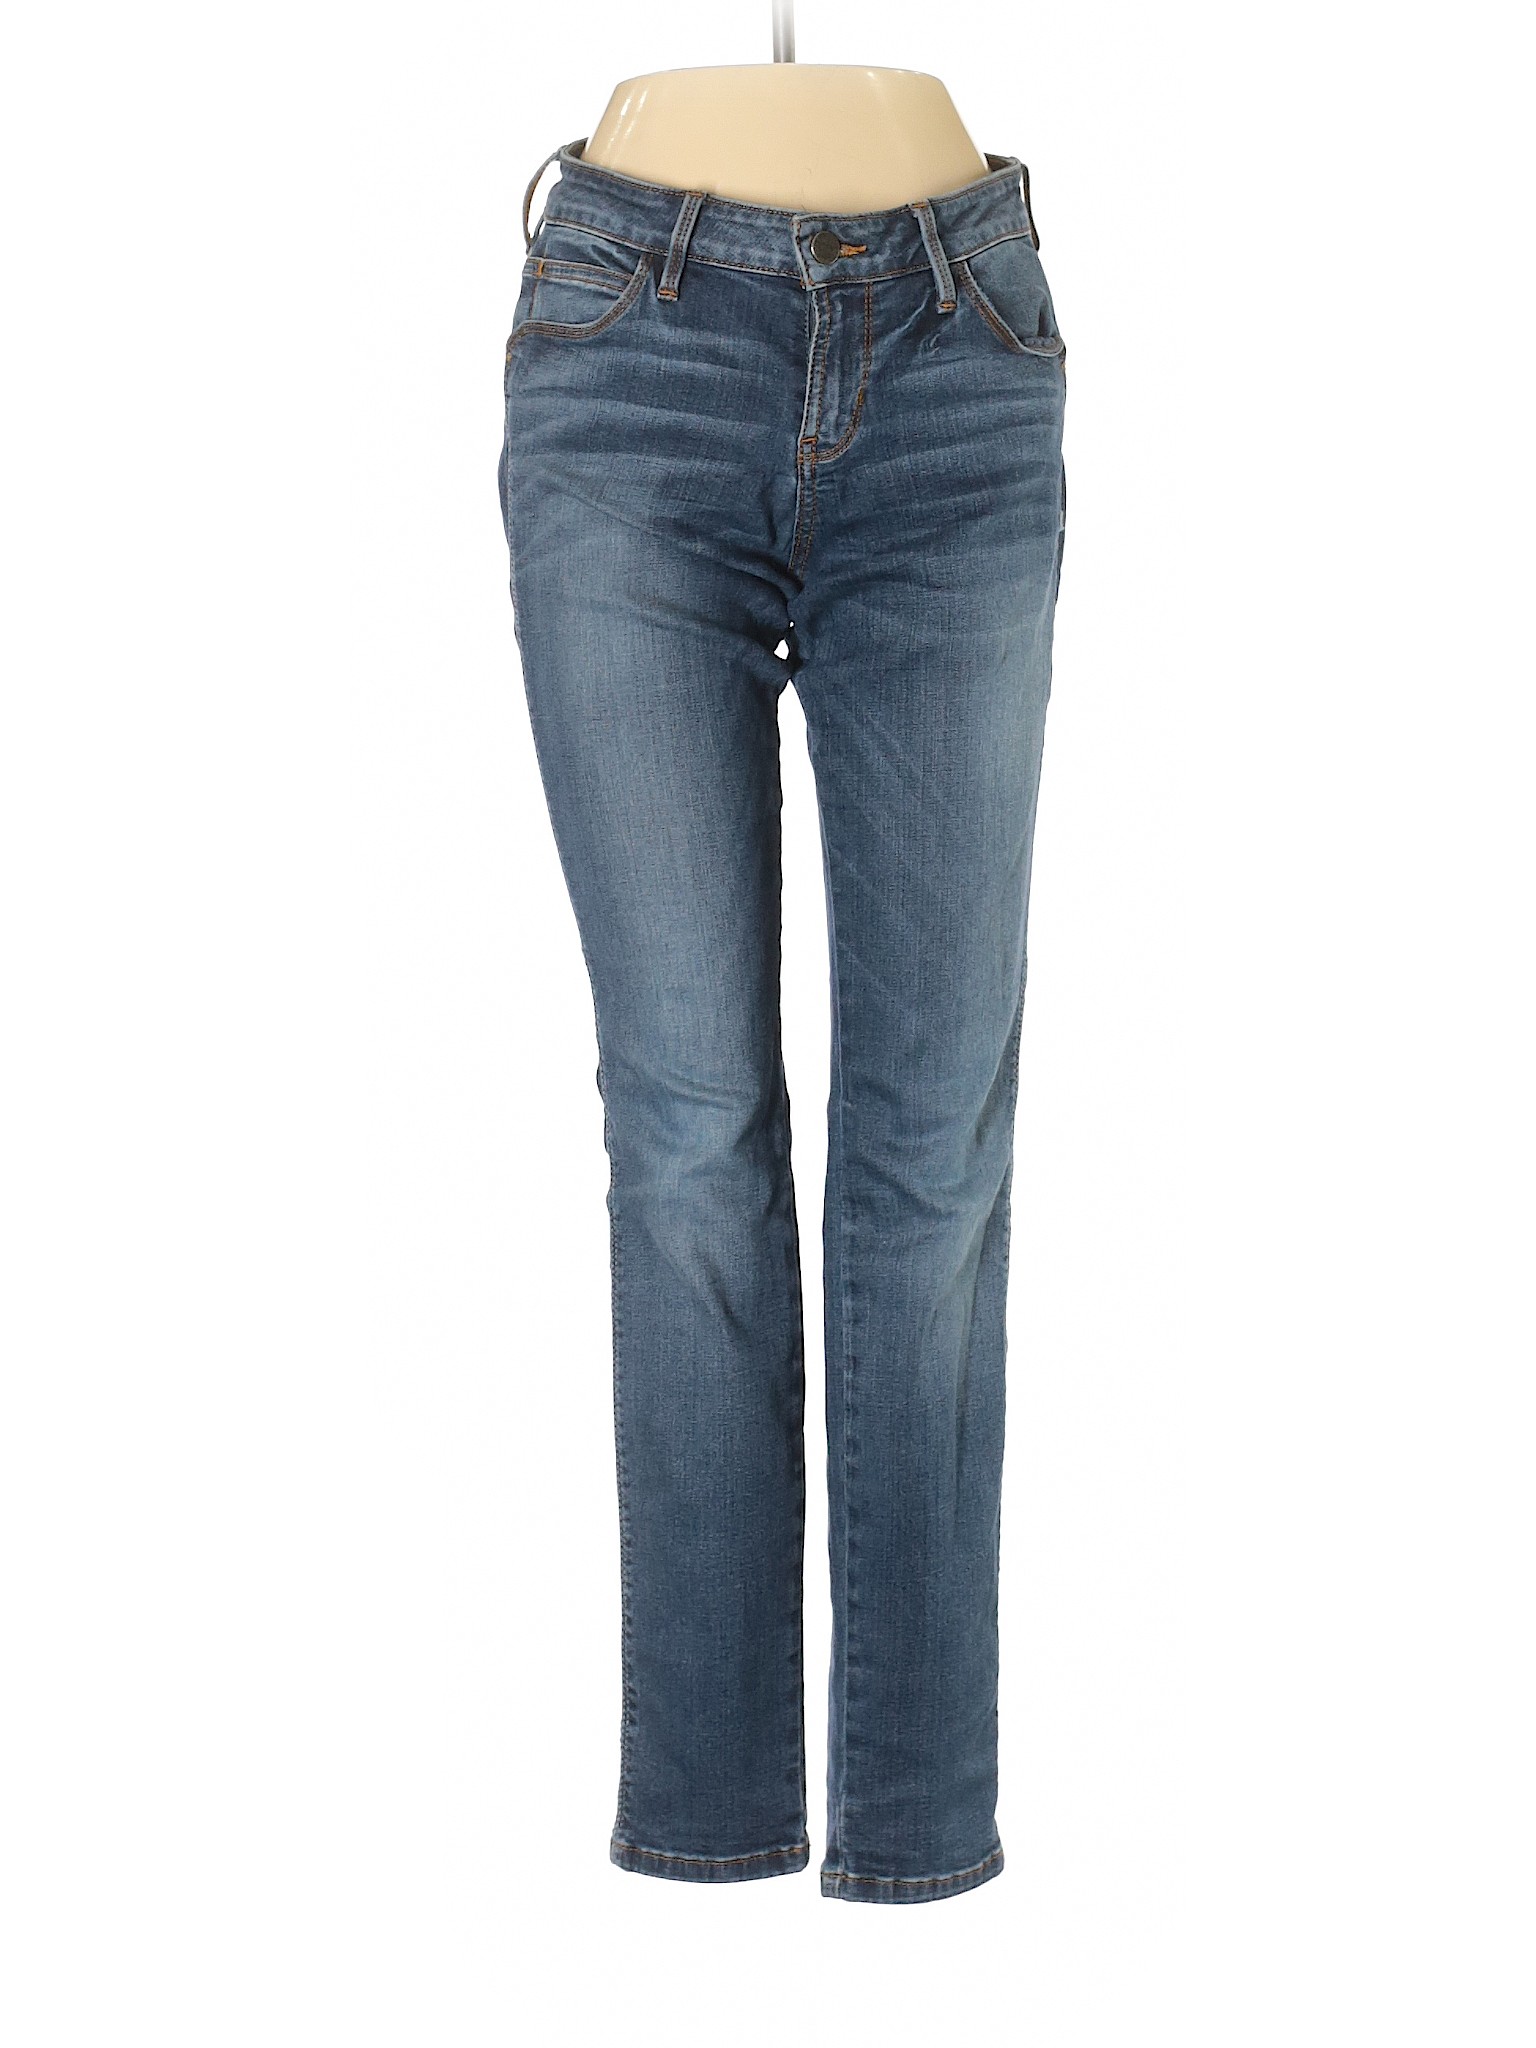 Guess Women Blue Jeans 25W | eBay